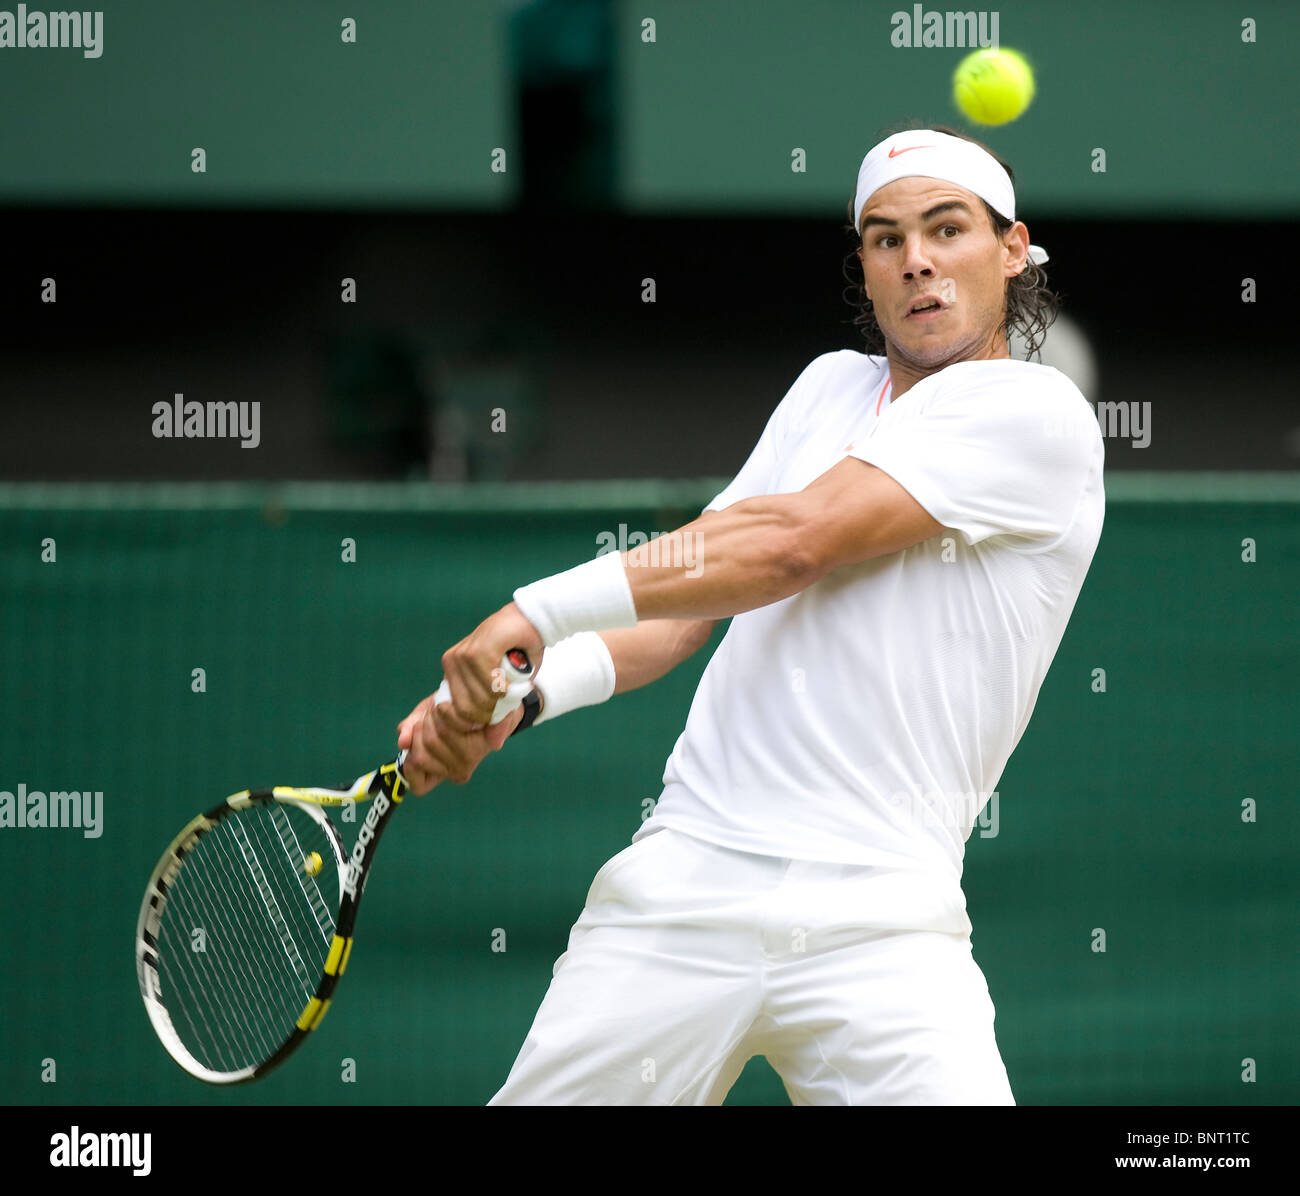 Rafael Nadal (ESP) en action au cours de la Tennis de Wimbledon 2010 Banque D'Images